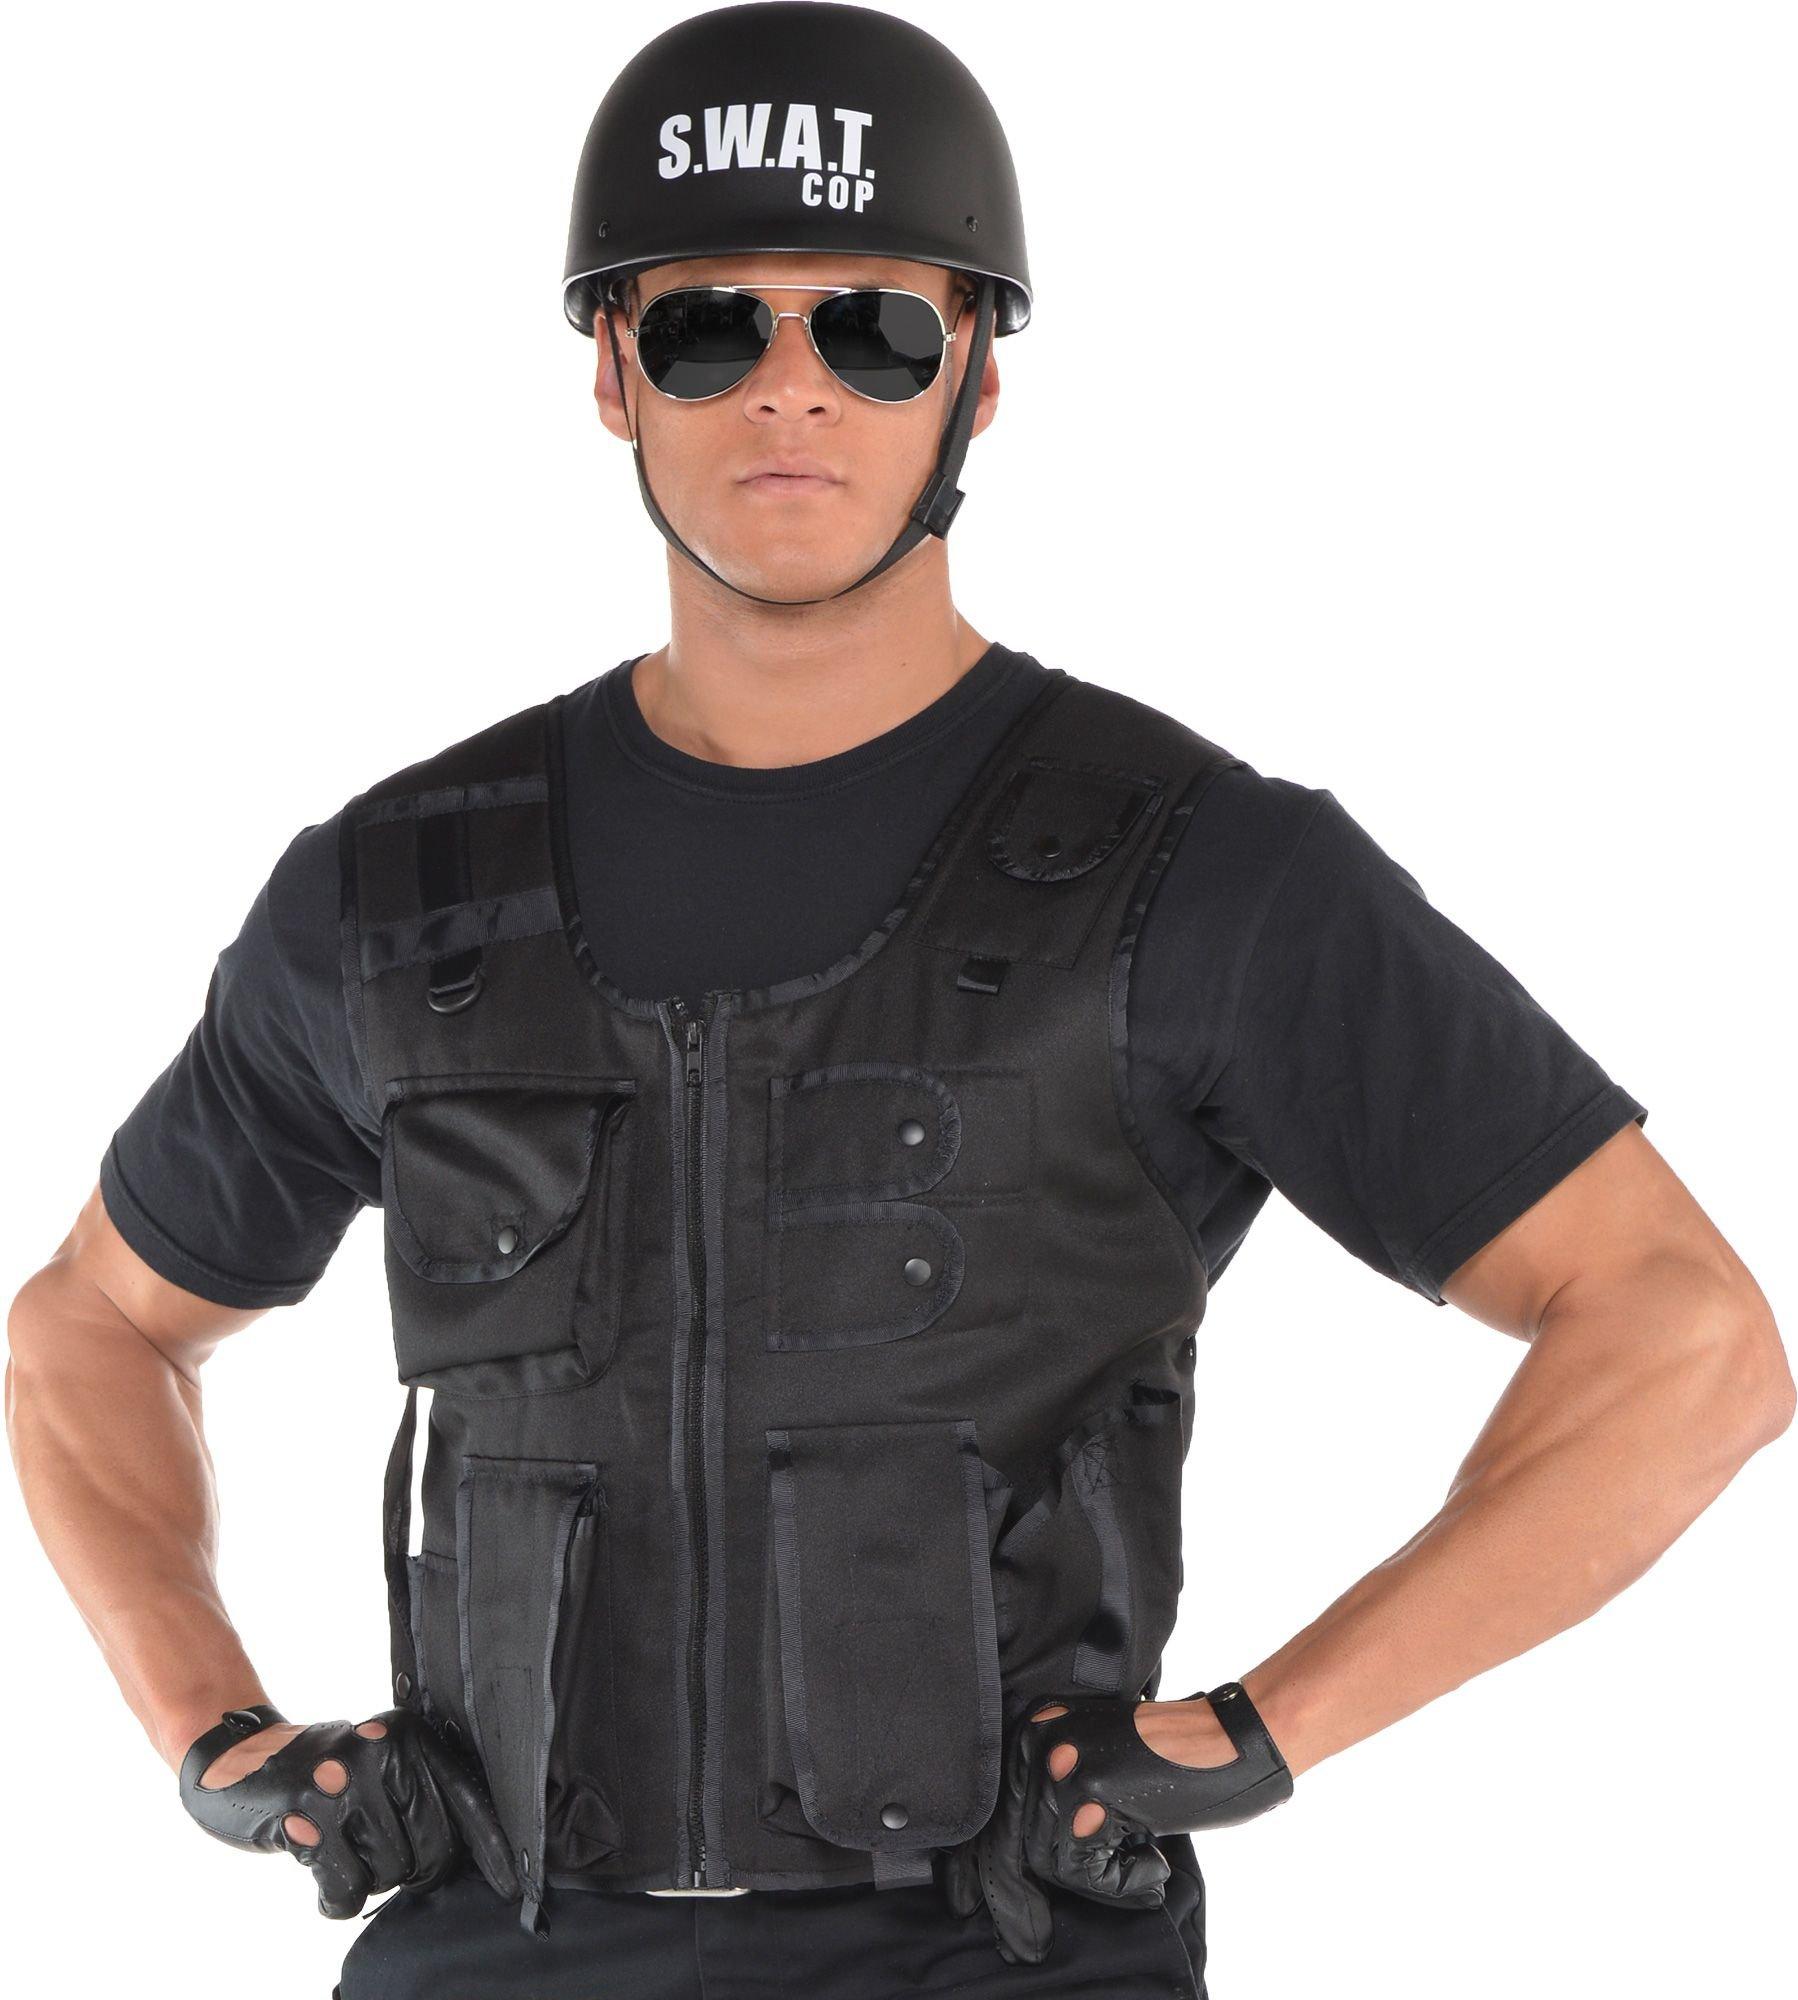 Mens SWAT Team Vest Costume — Costume Super Center